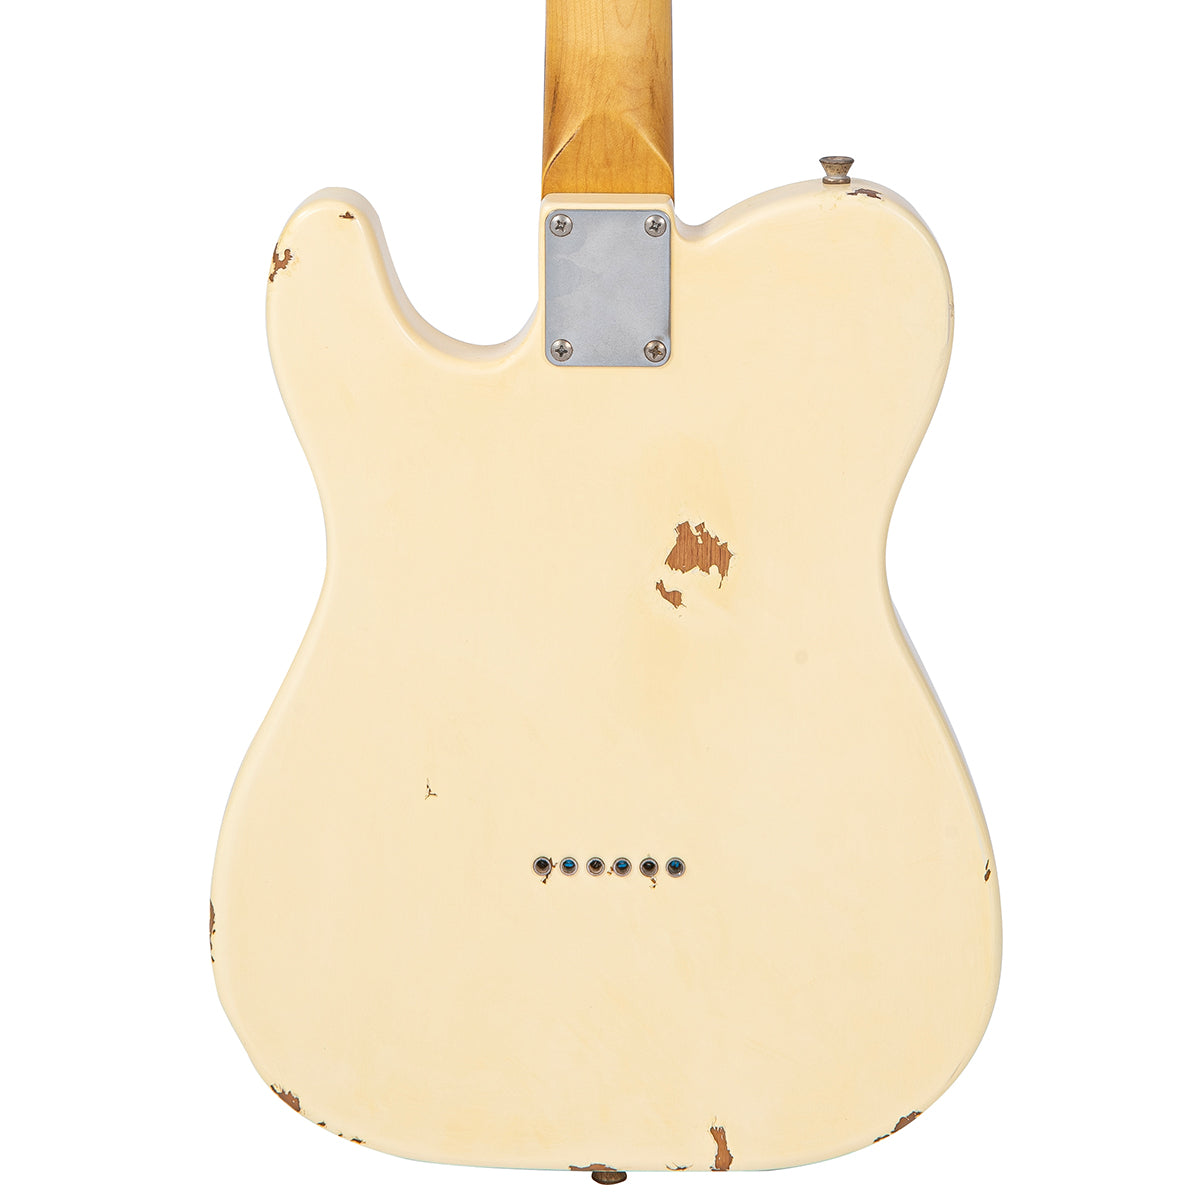 SOLD - Vintage V62 ProShop Custom Build ~ Vintage White, Electrics for sale at Richards Guitars.